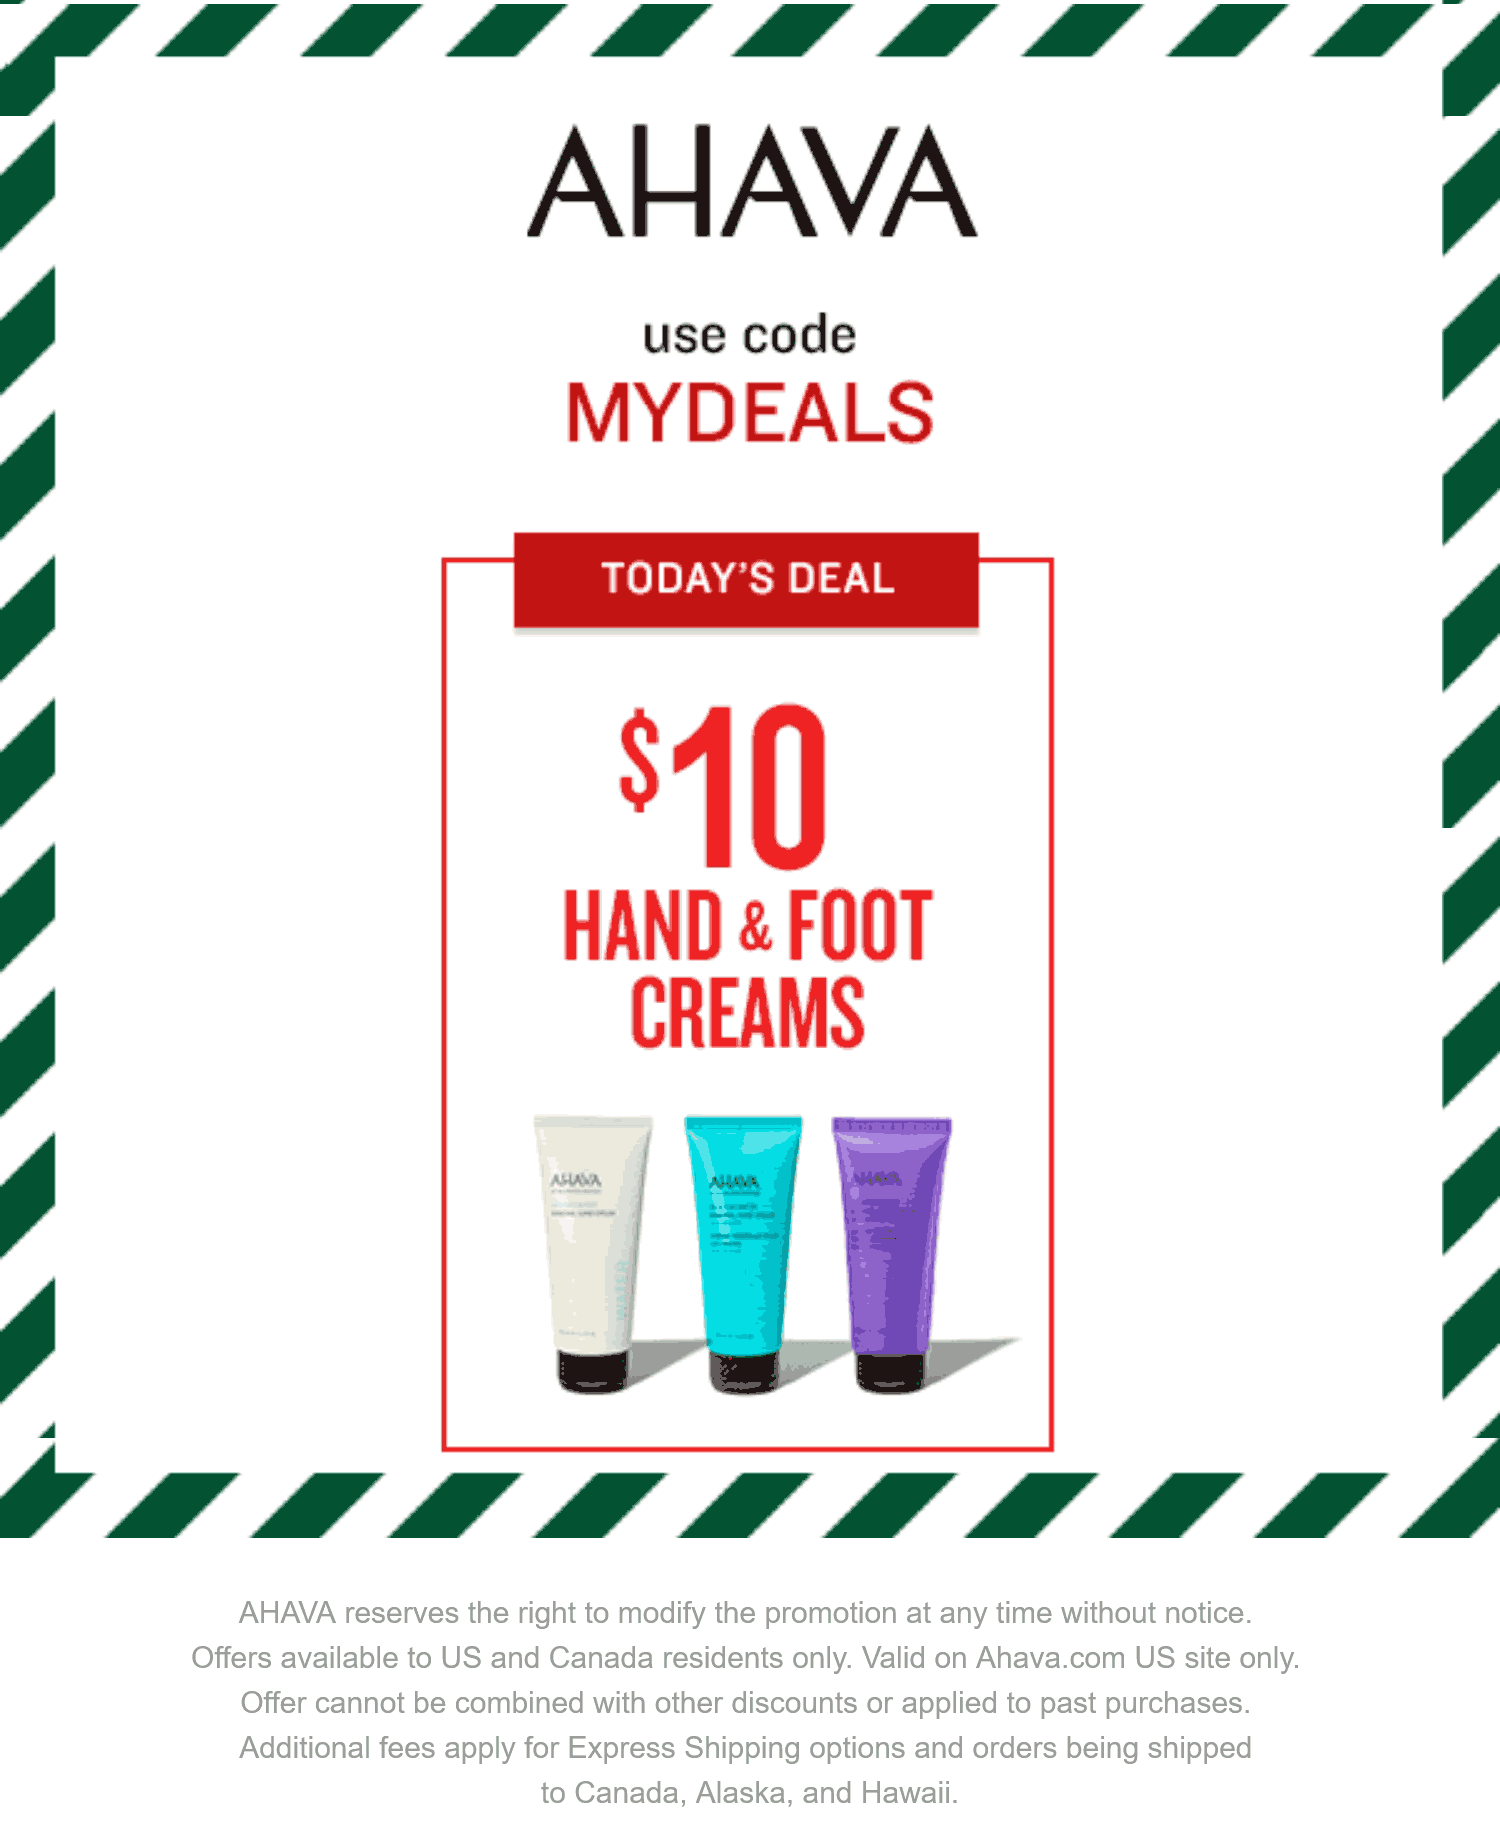 AHAVA stores Coupon  $10 hand & foot creams today at AHAVA via promo code MYDEALS #ahava 